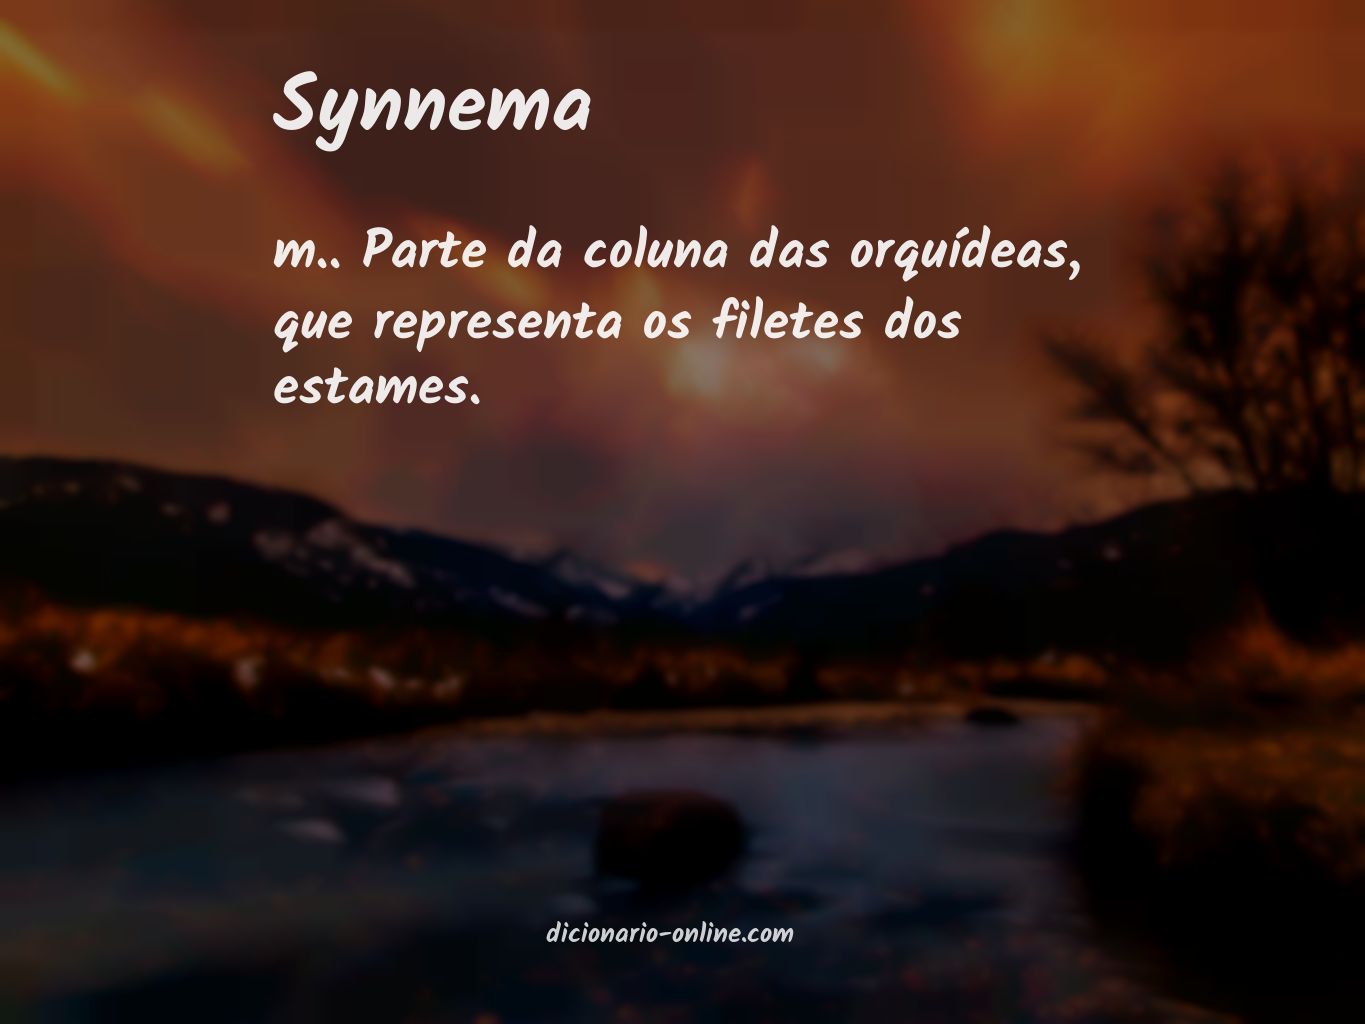 Significado de synnema